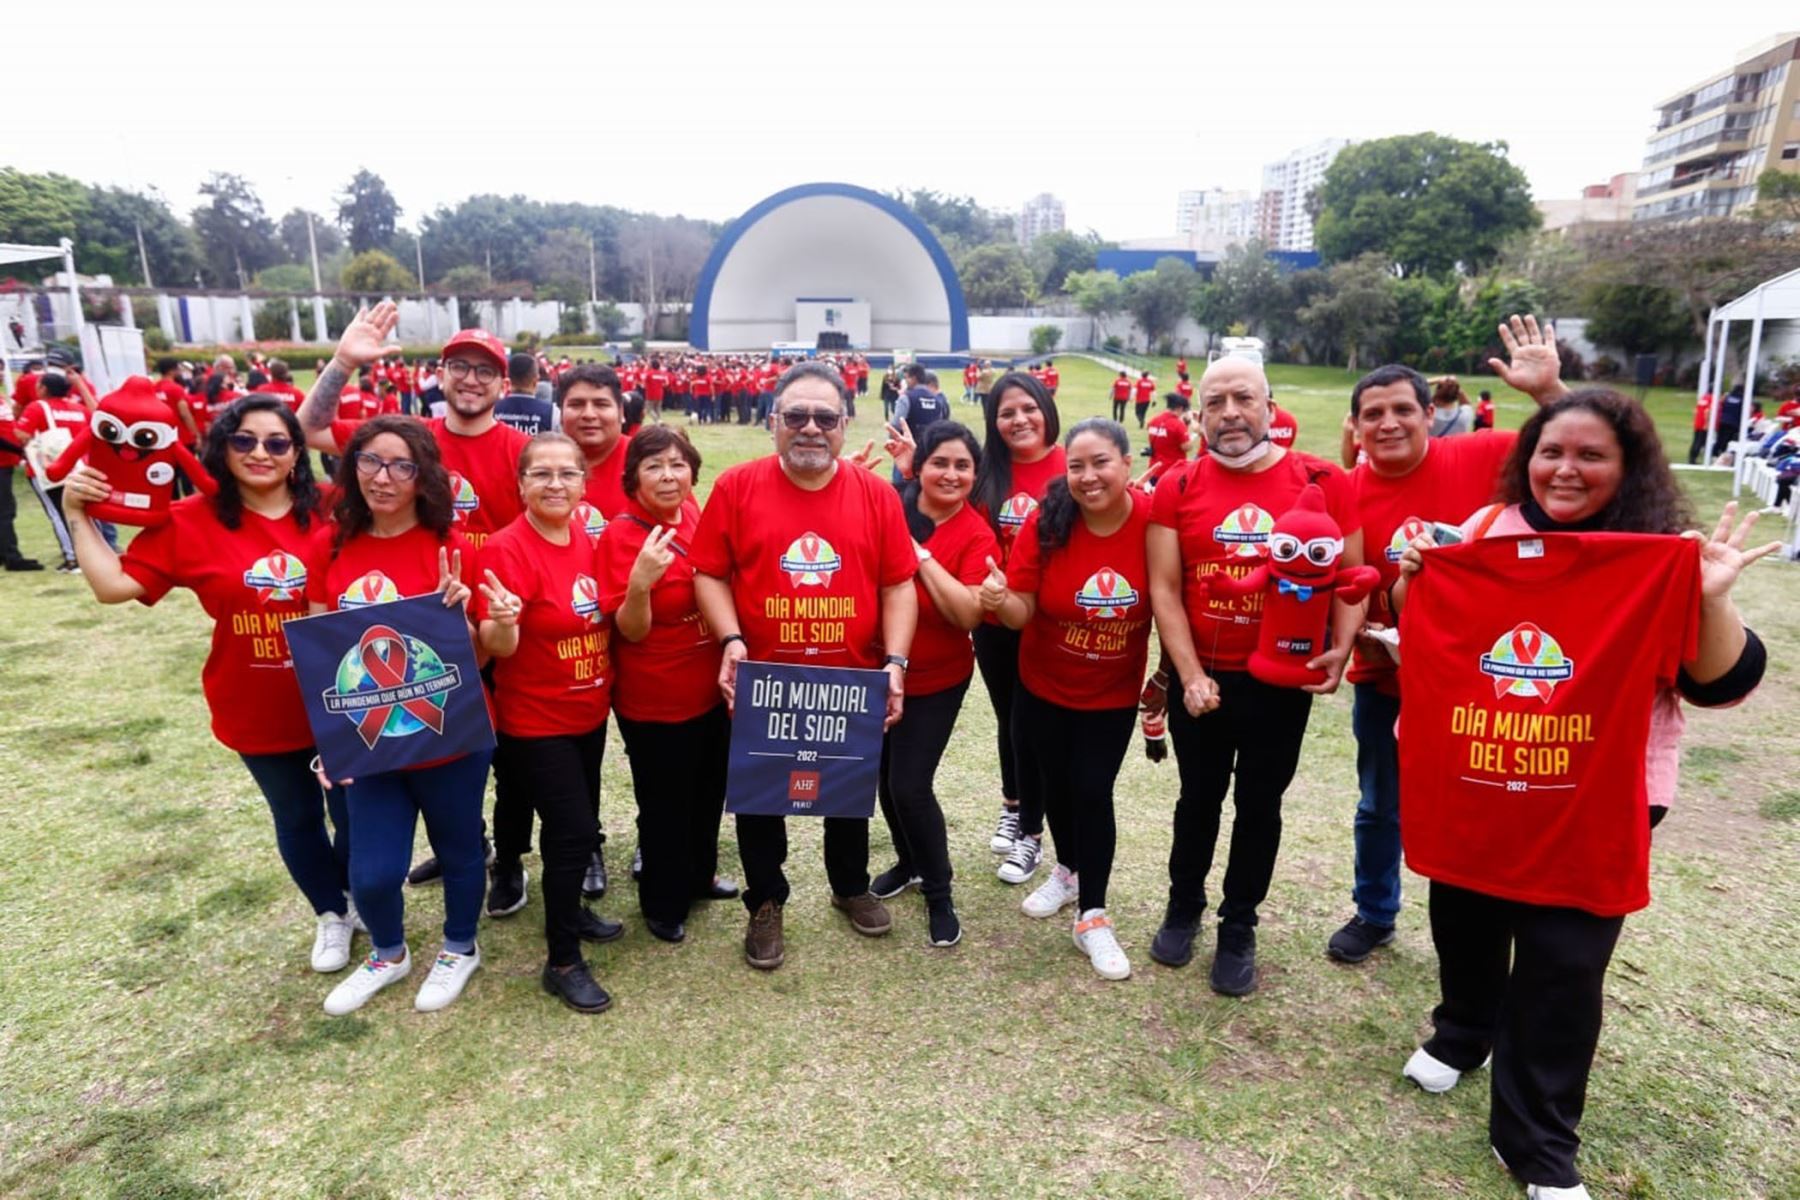 El Ministerio de Salud, con la participación de AHF Perú y otras organizaciones de la sociedad civil, organizarán actividades por el Día Mundial de Lucha contra el Sida. ANDINA/ AHF